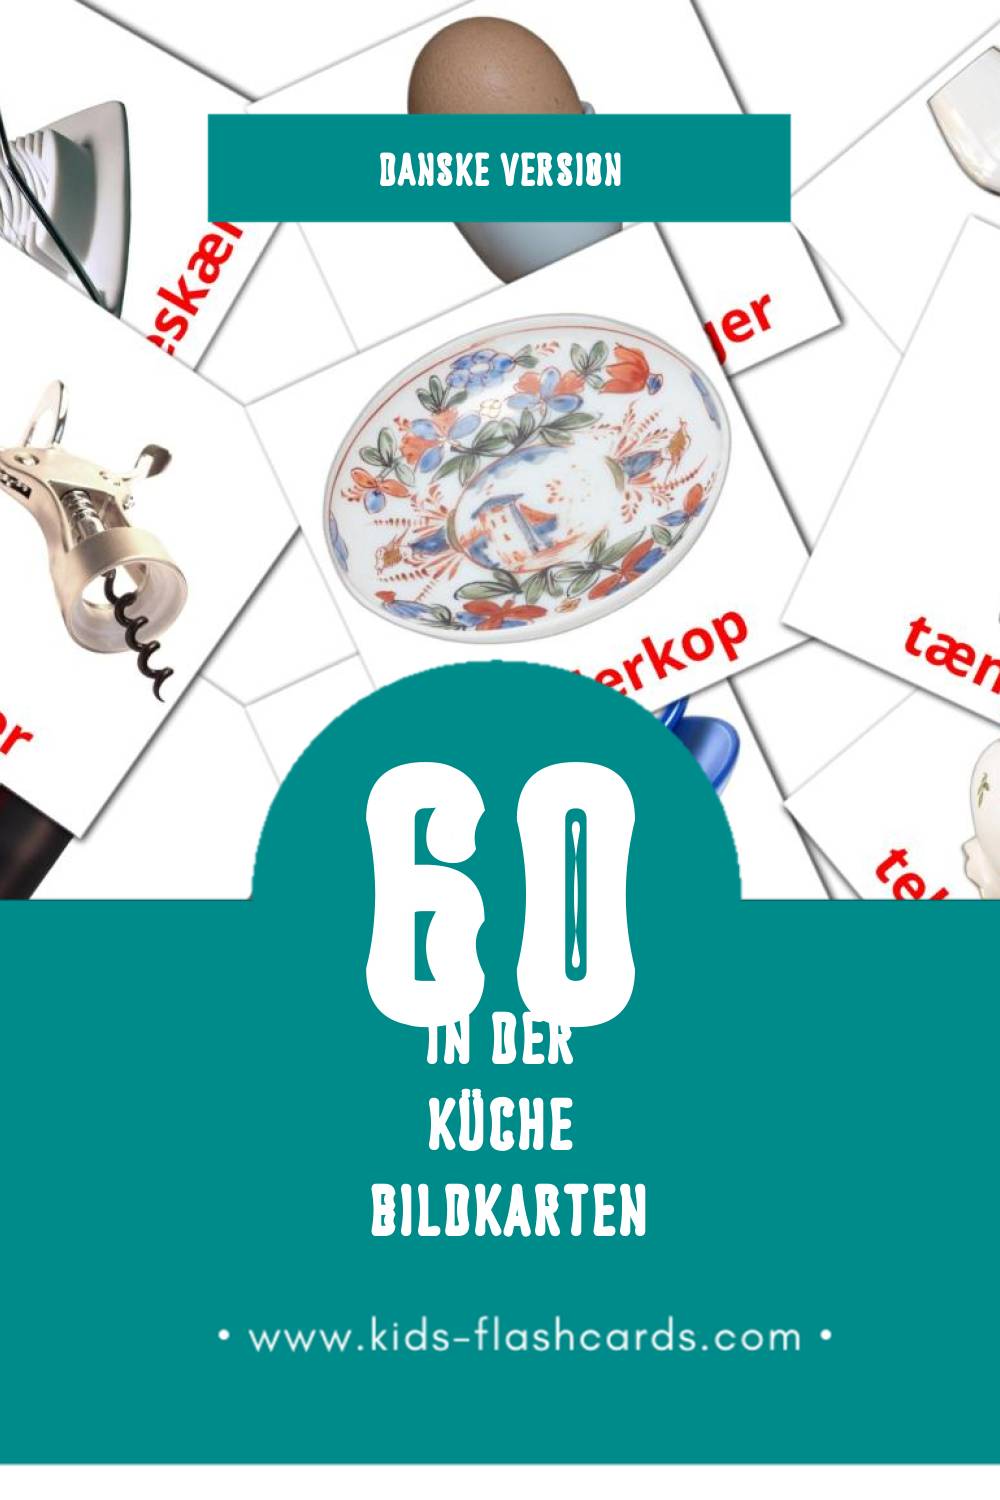 Visual Køkken Flashcards für Kleinkinder (60 Karten in Dansk)